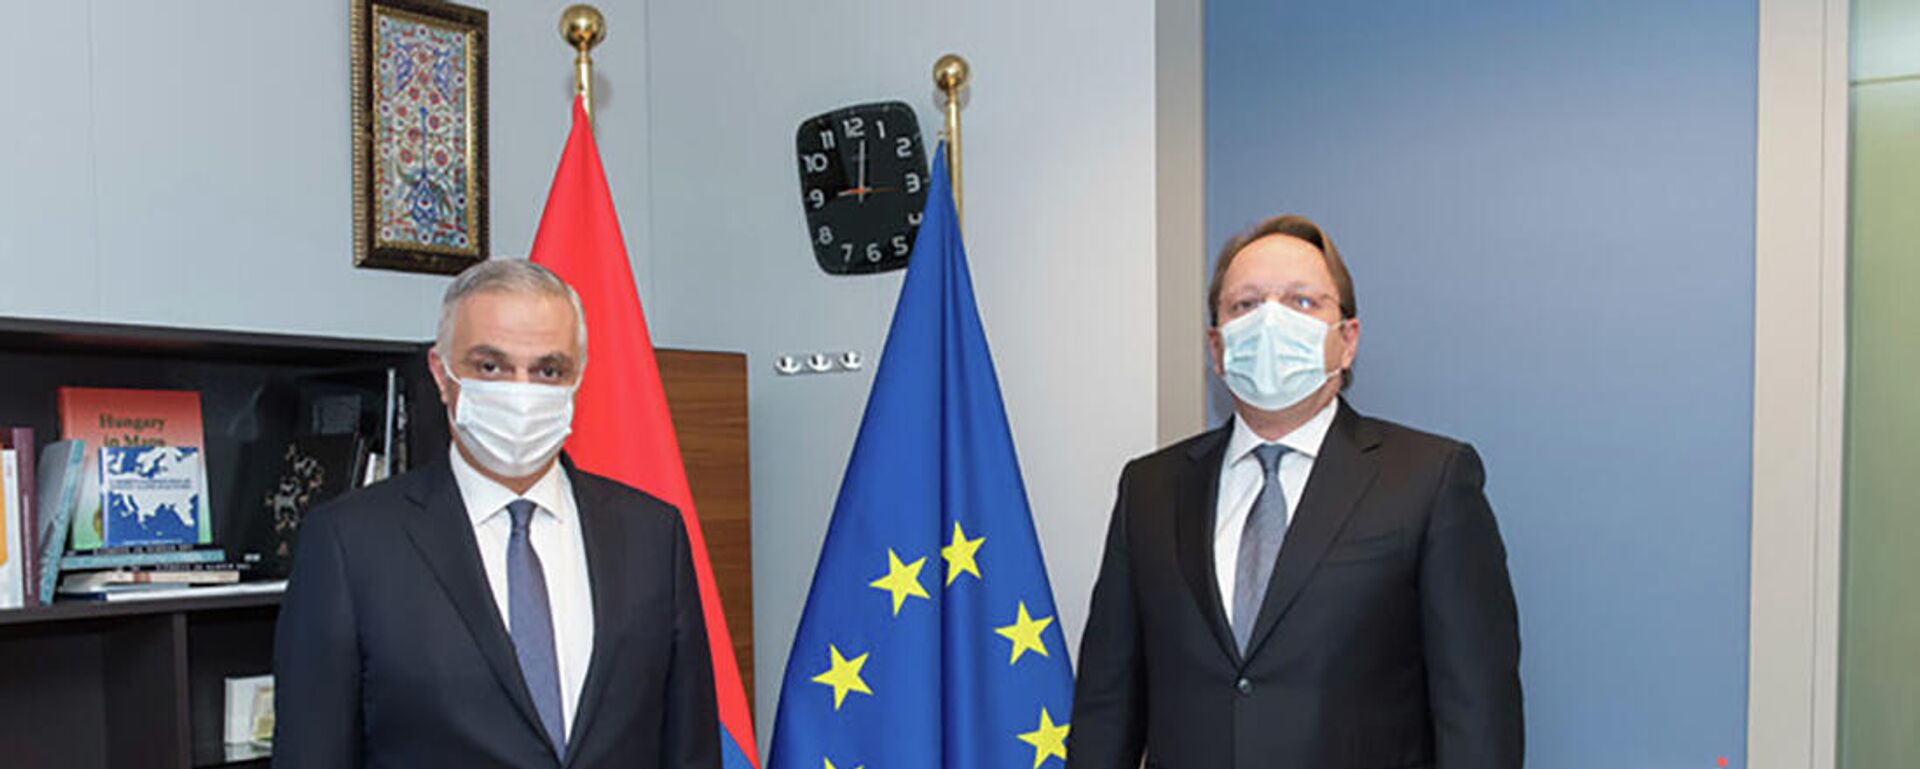 Вице-премьер Мгер Григорян встретился в с комиссаром ЕС Оливером Вархе (15 декабря 2021). Брюссель - Sputnik Армения, 1920, 15.12.2021